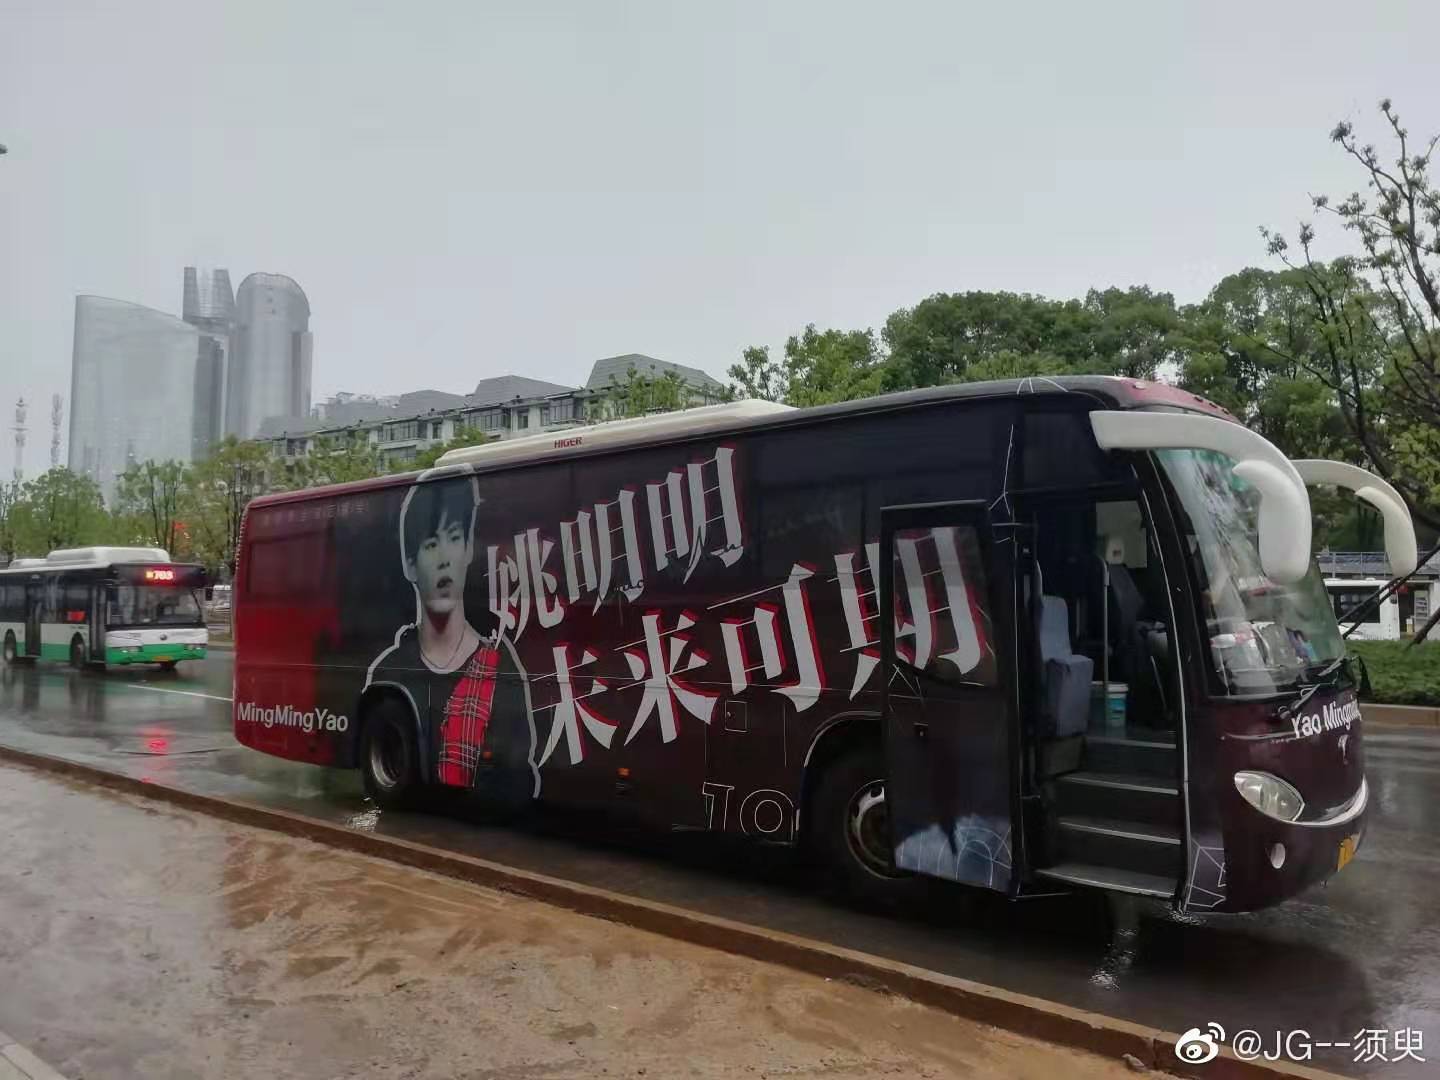 佛山定制巴士广告|惠州创意大巴车广告|中山巡游大巴车广告发布